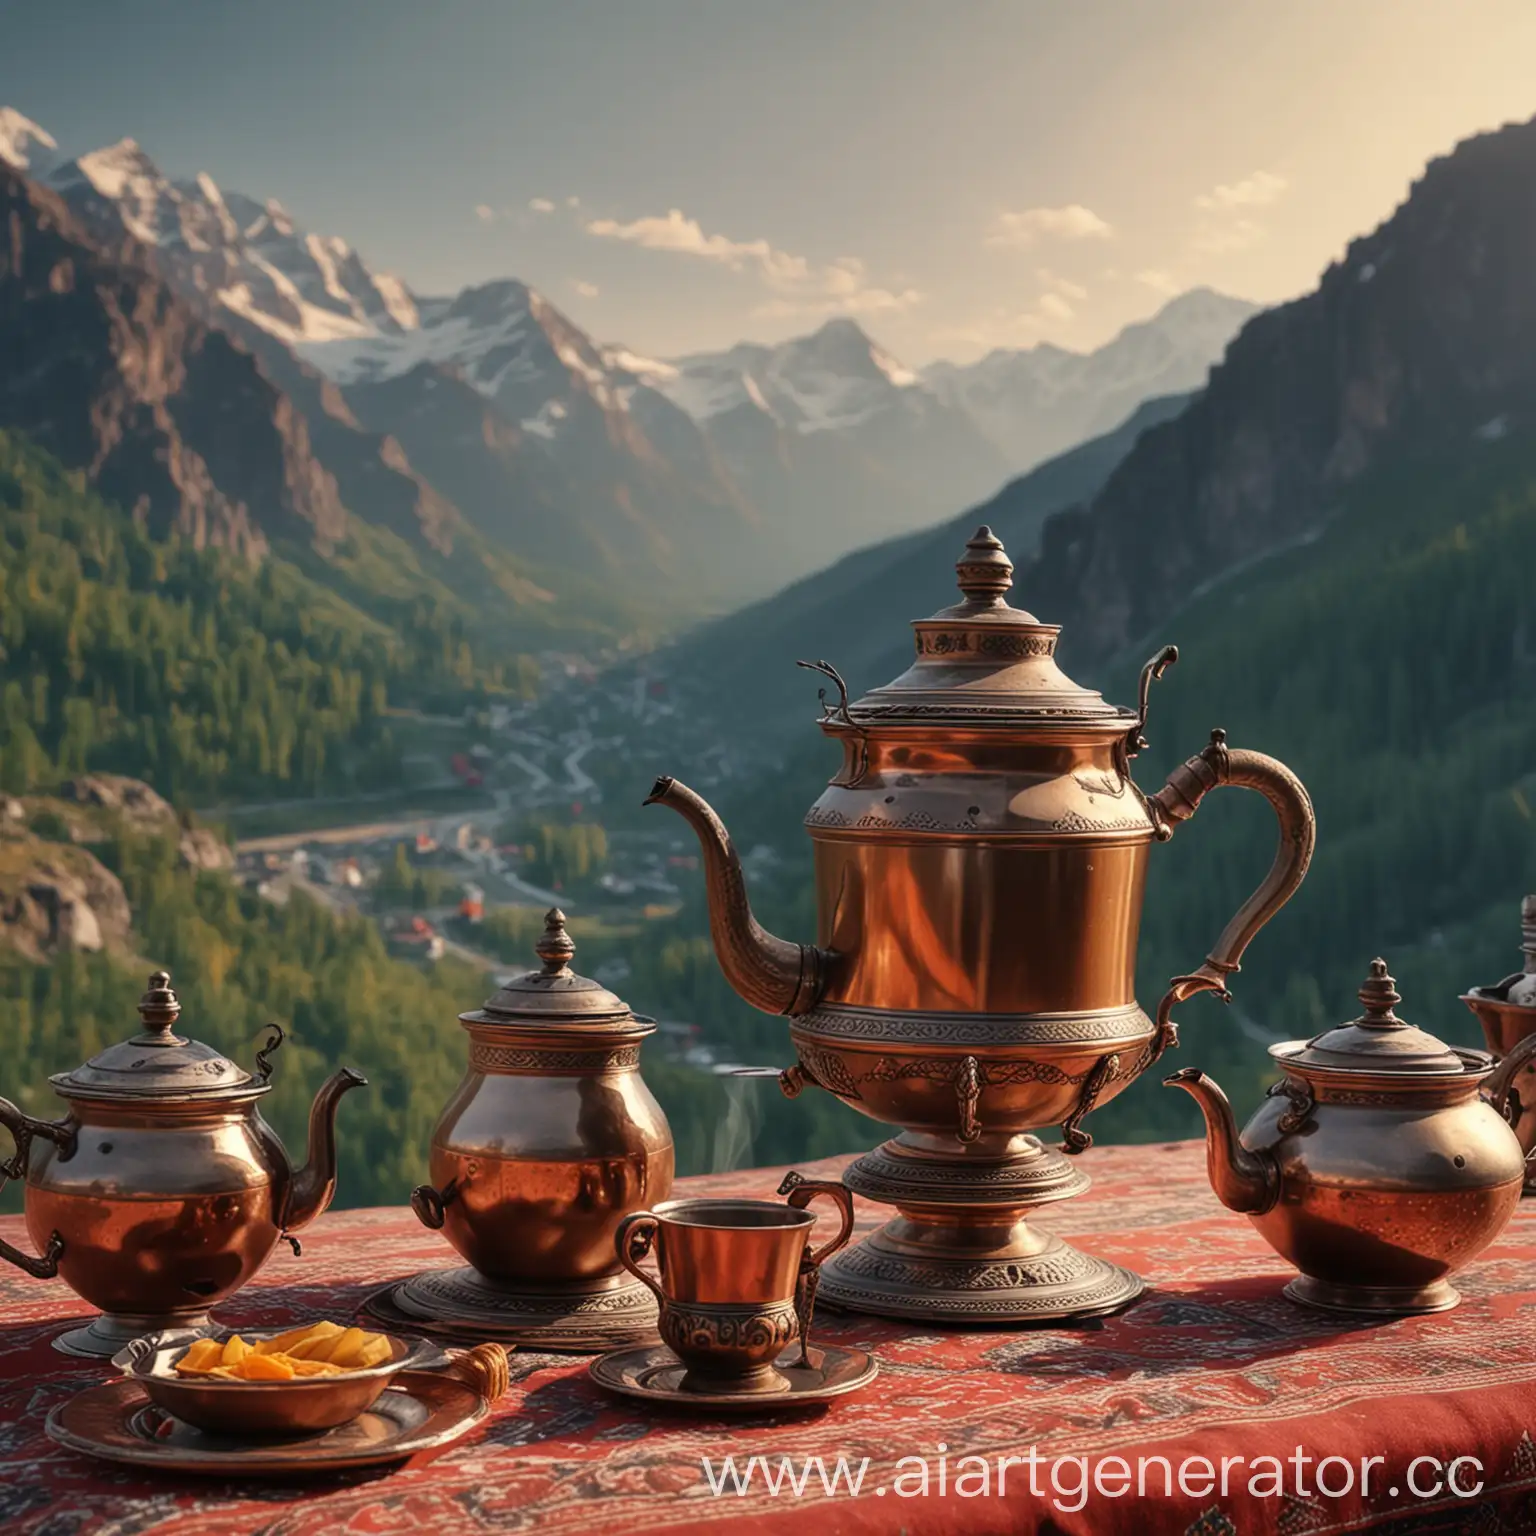 Mountain-Landscape-with-Samovar-Tea